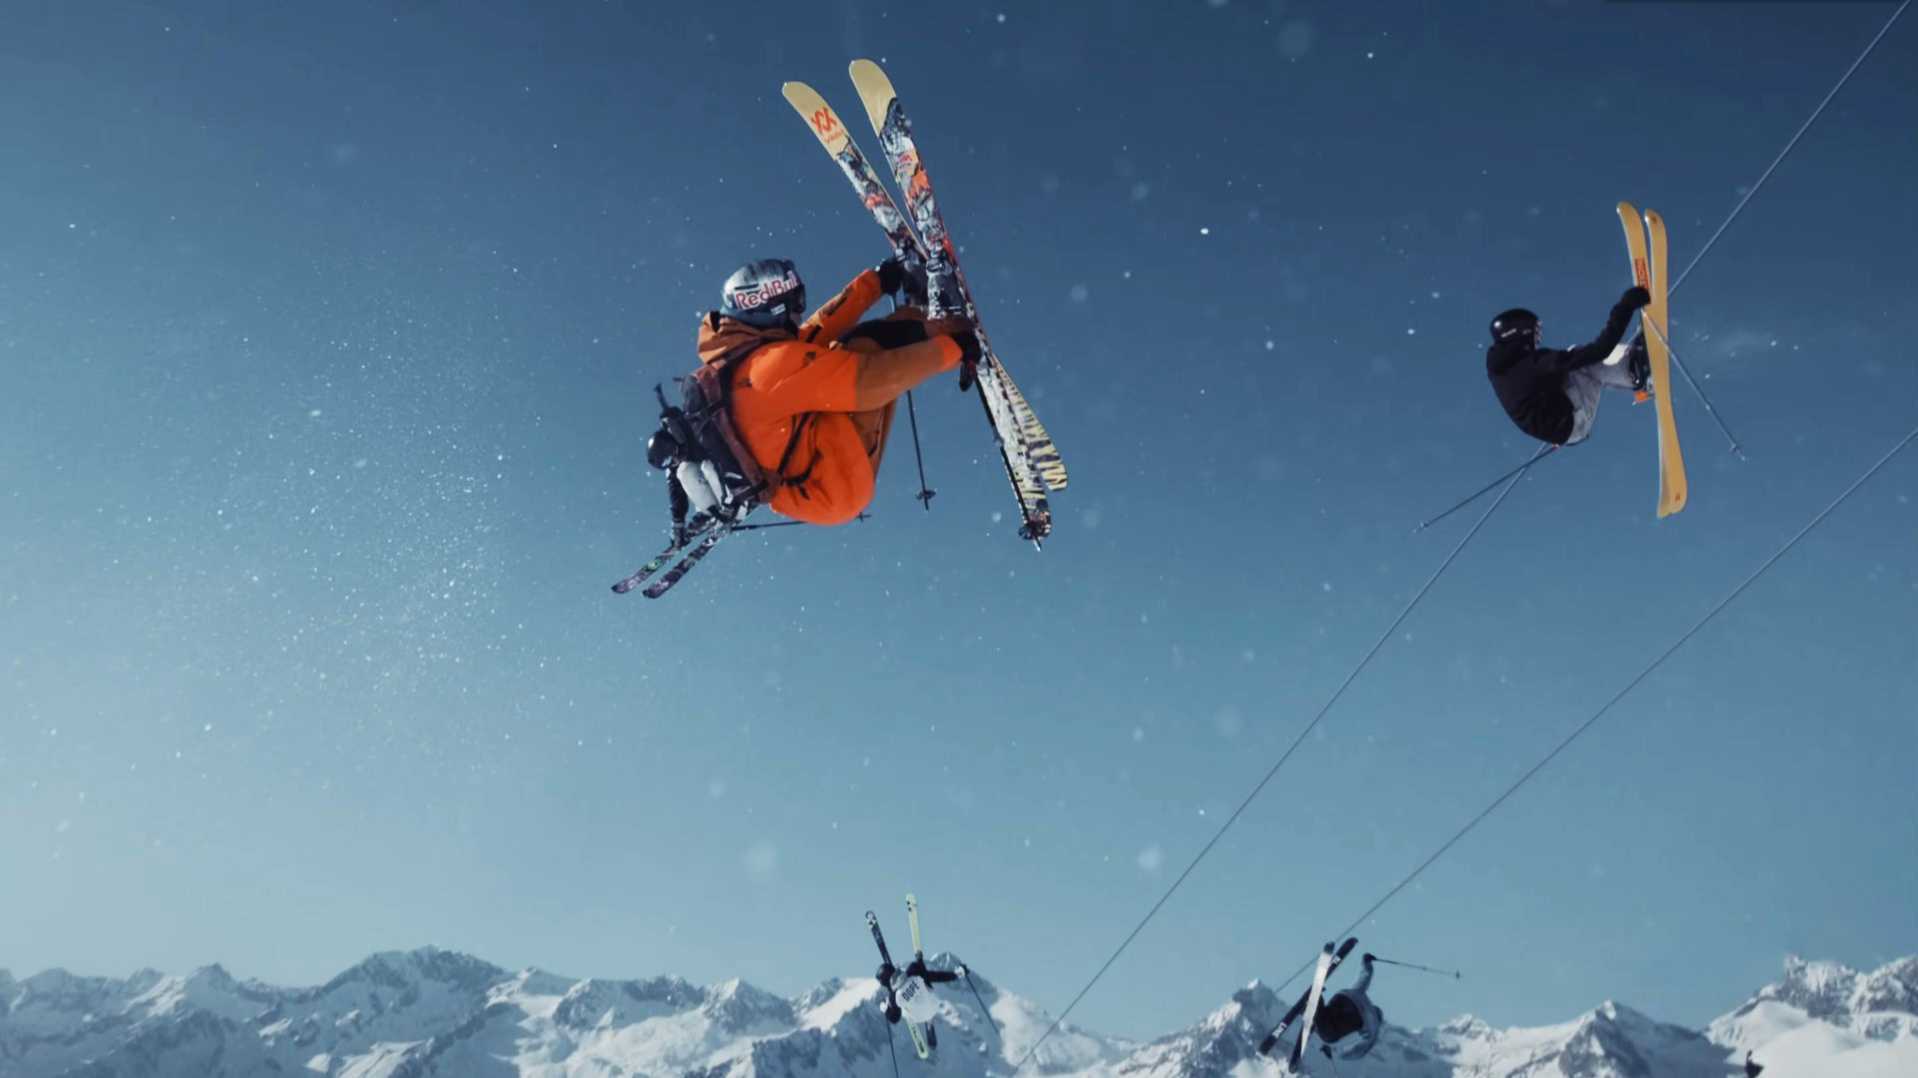 年度滑雪Top 1《红牛终极滑雪秀》